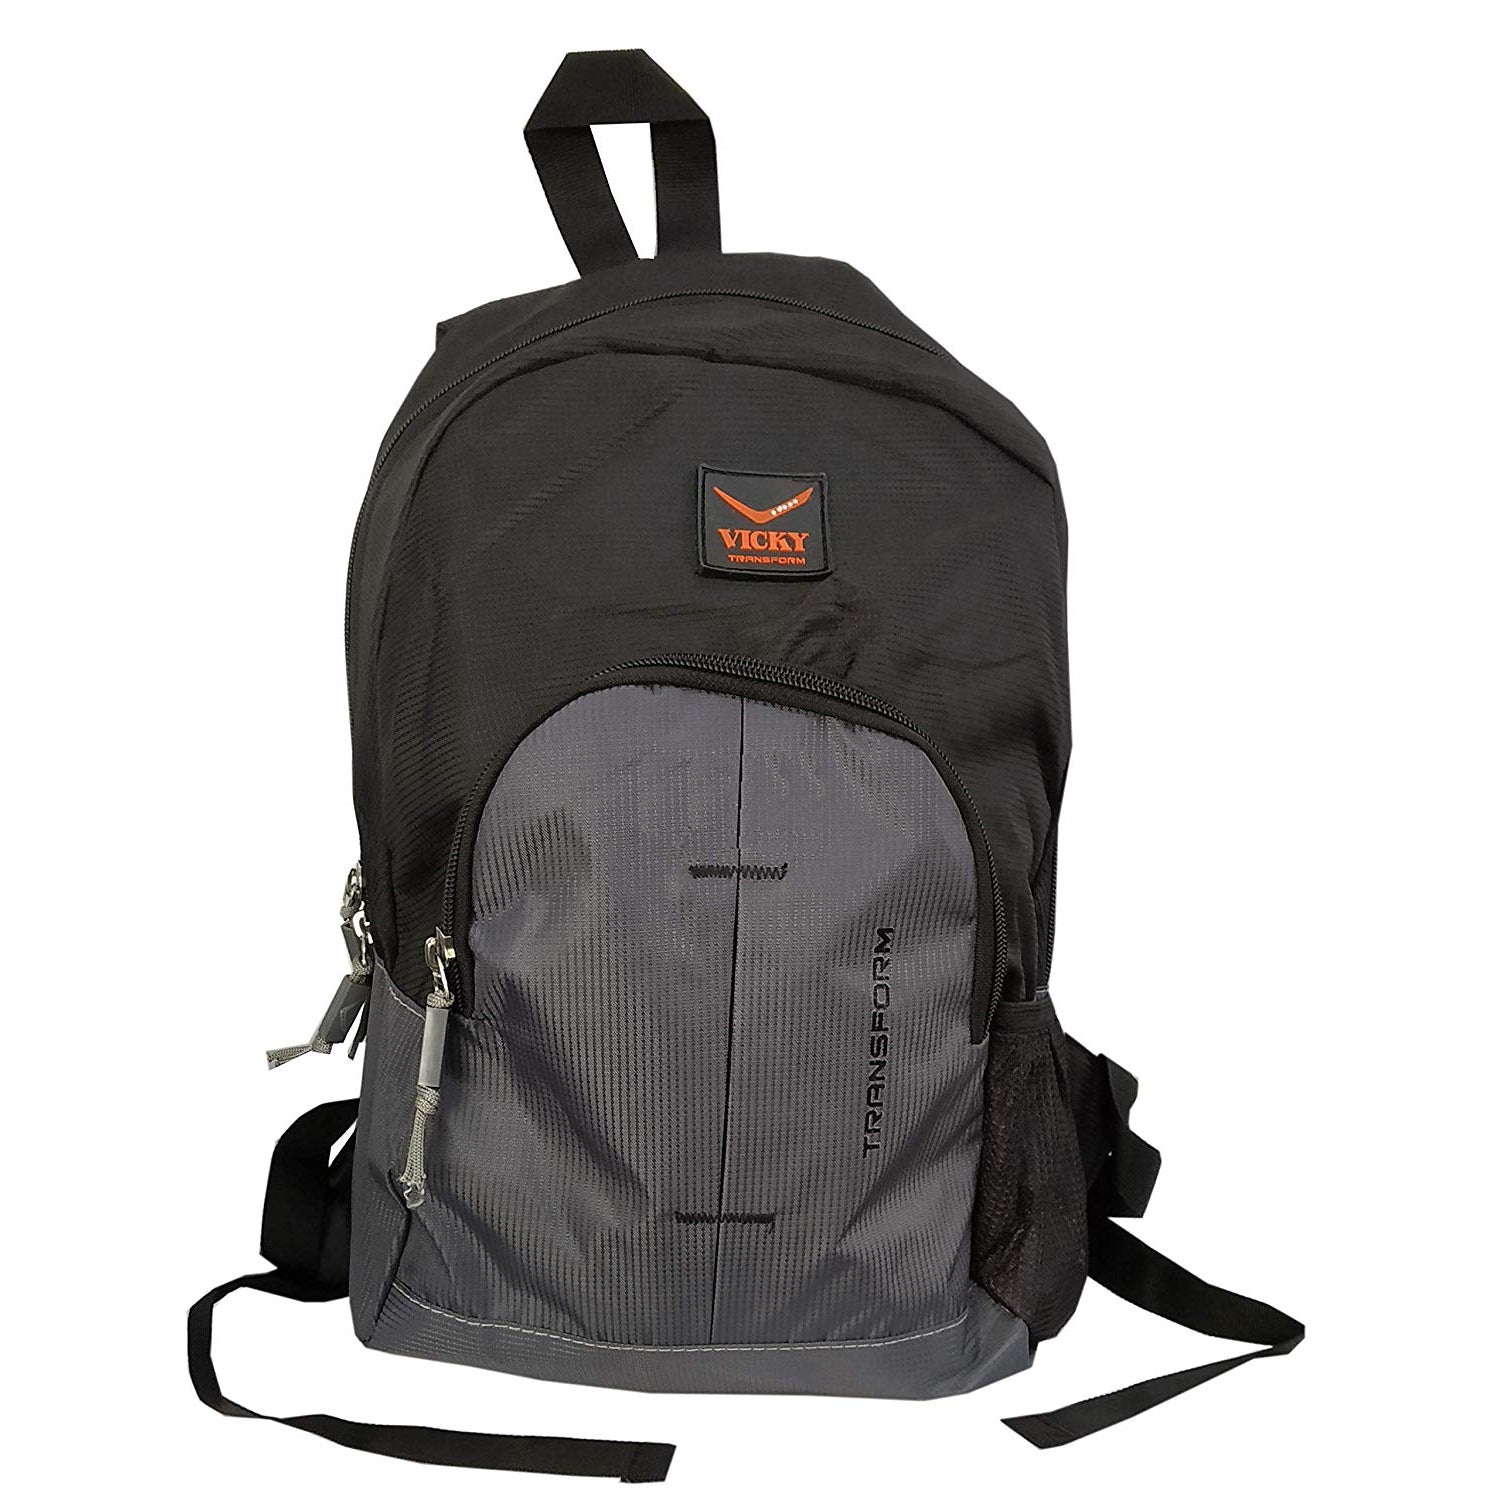 Vicky Backpack (Rubber Logo), Black/Grey - Best Price online Prokicksports.com